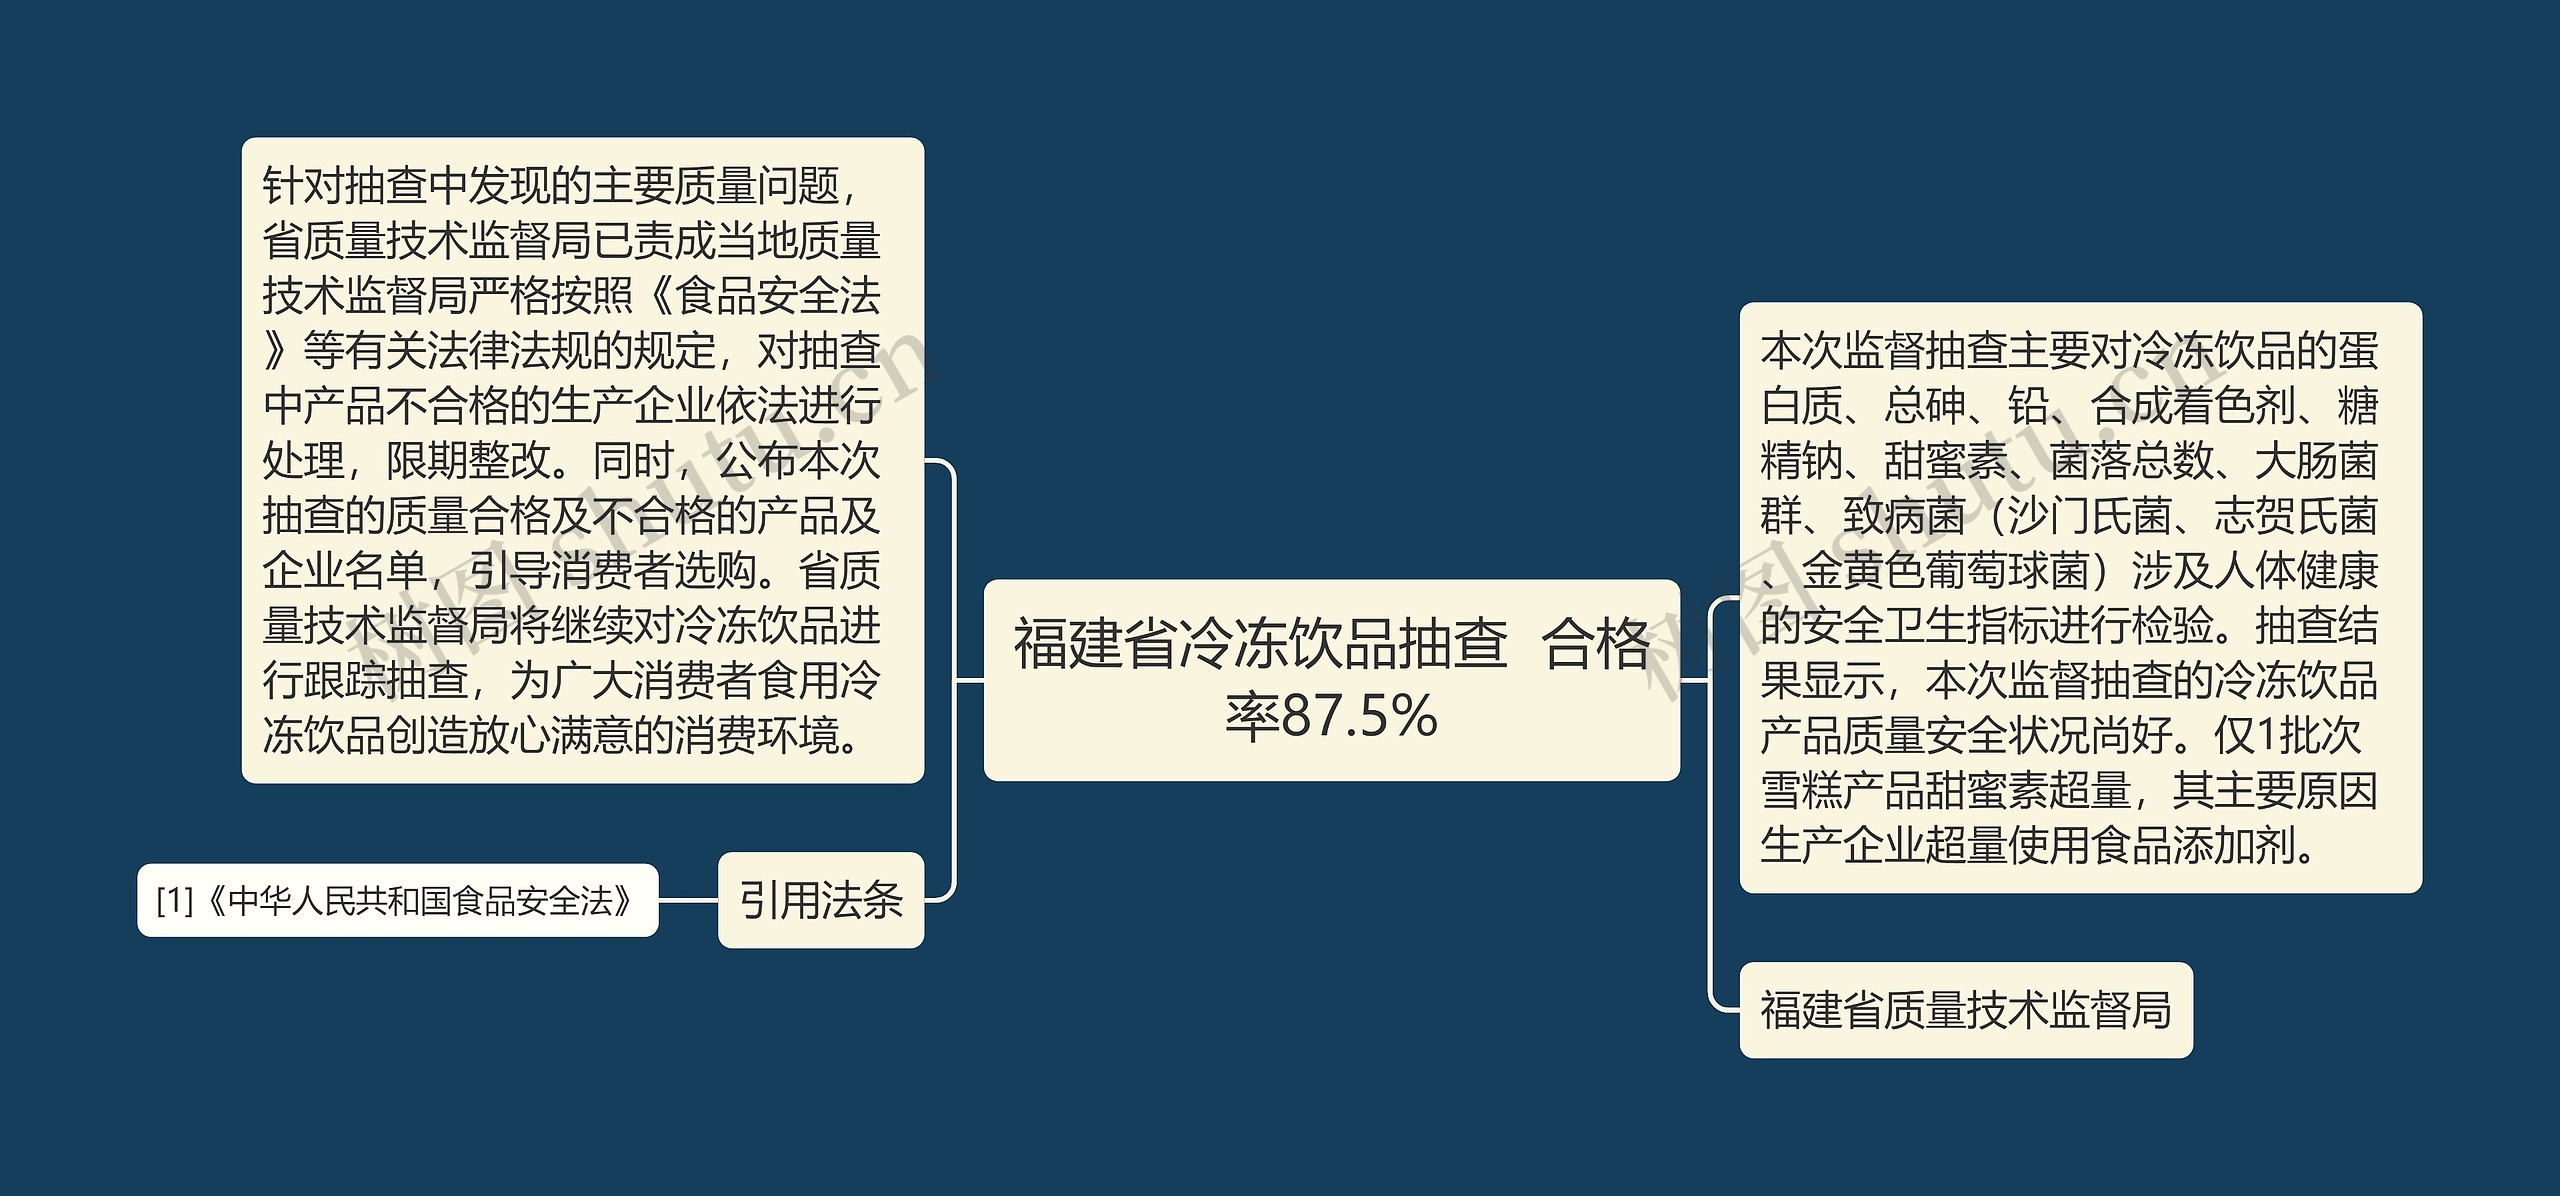 福建省冷冻饮品抽查  合格率87.5%思维导图